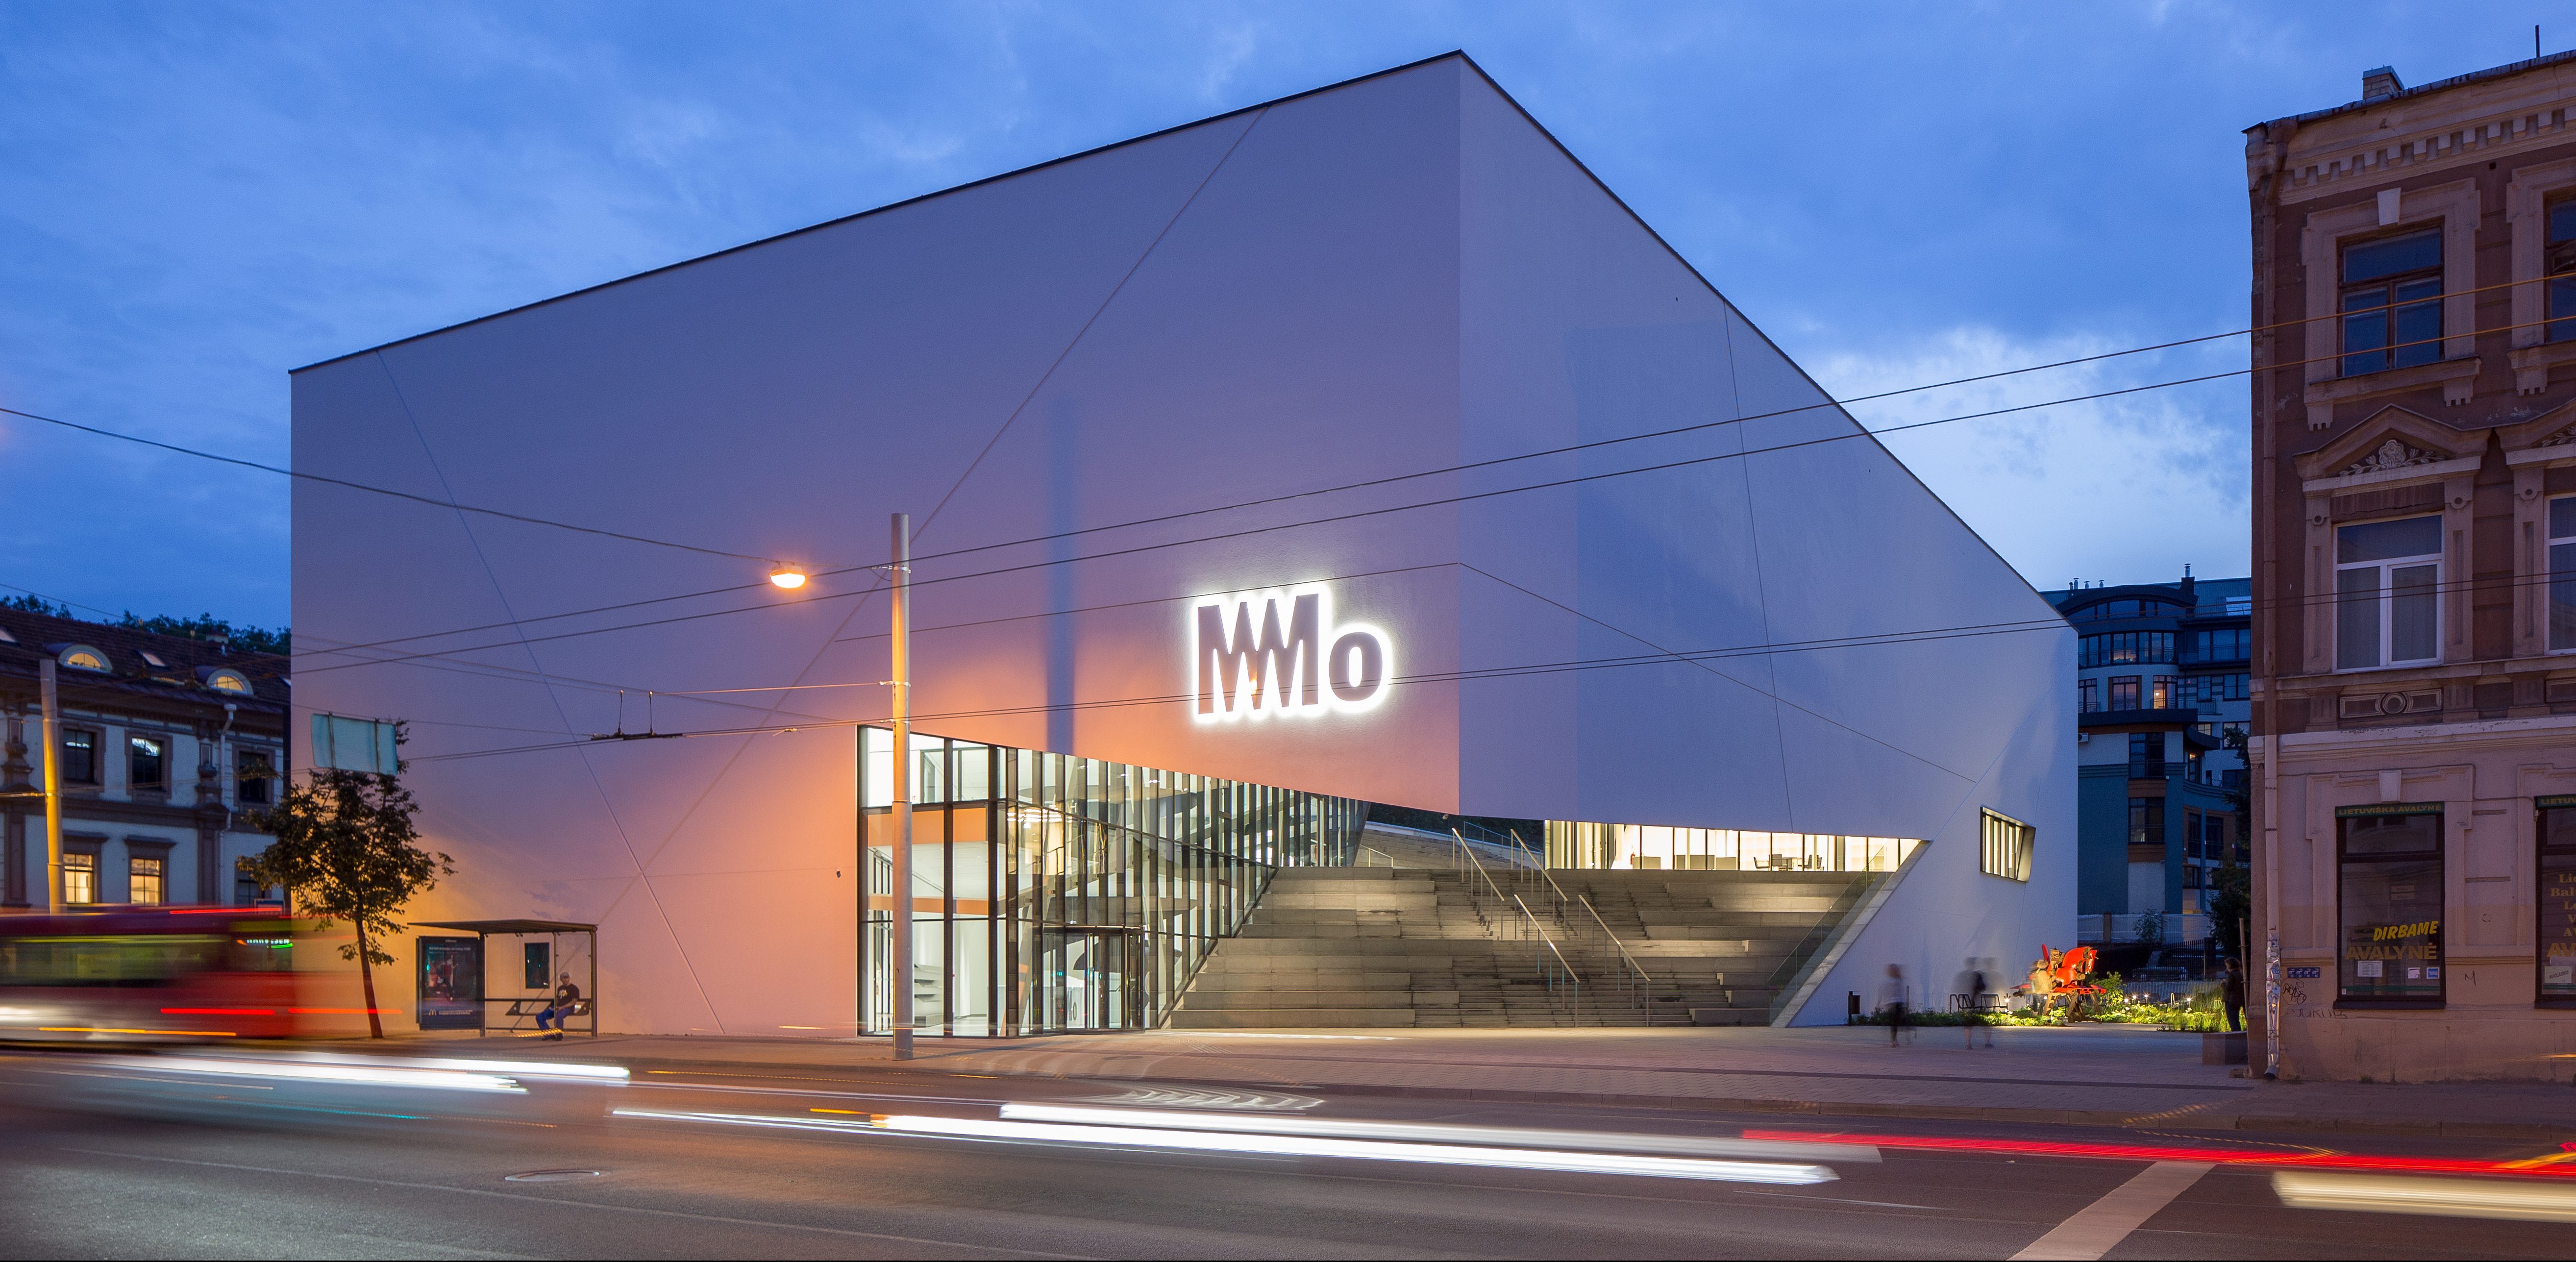 Baigta išskirtiniais architektūriniais sprendimais garsėjančio „MO muziejaus“ pastato statyba